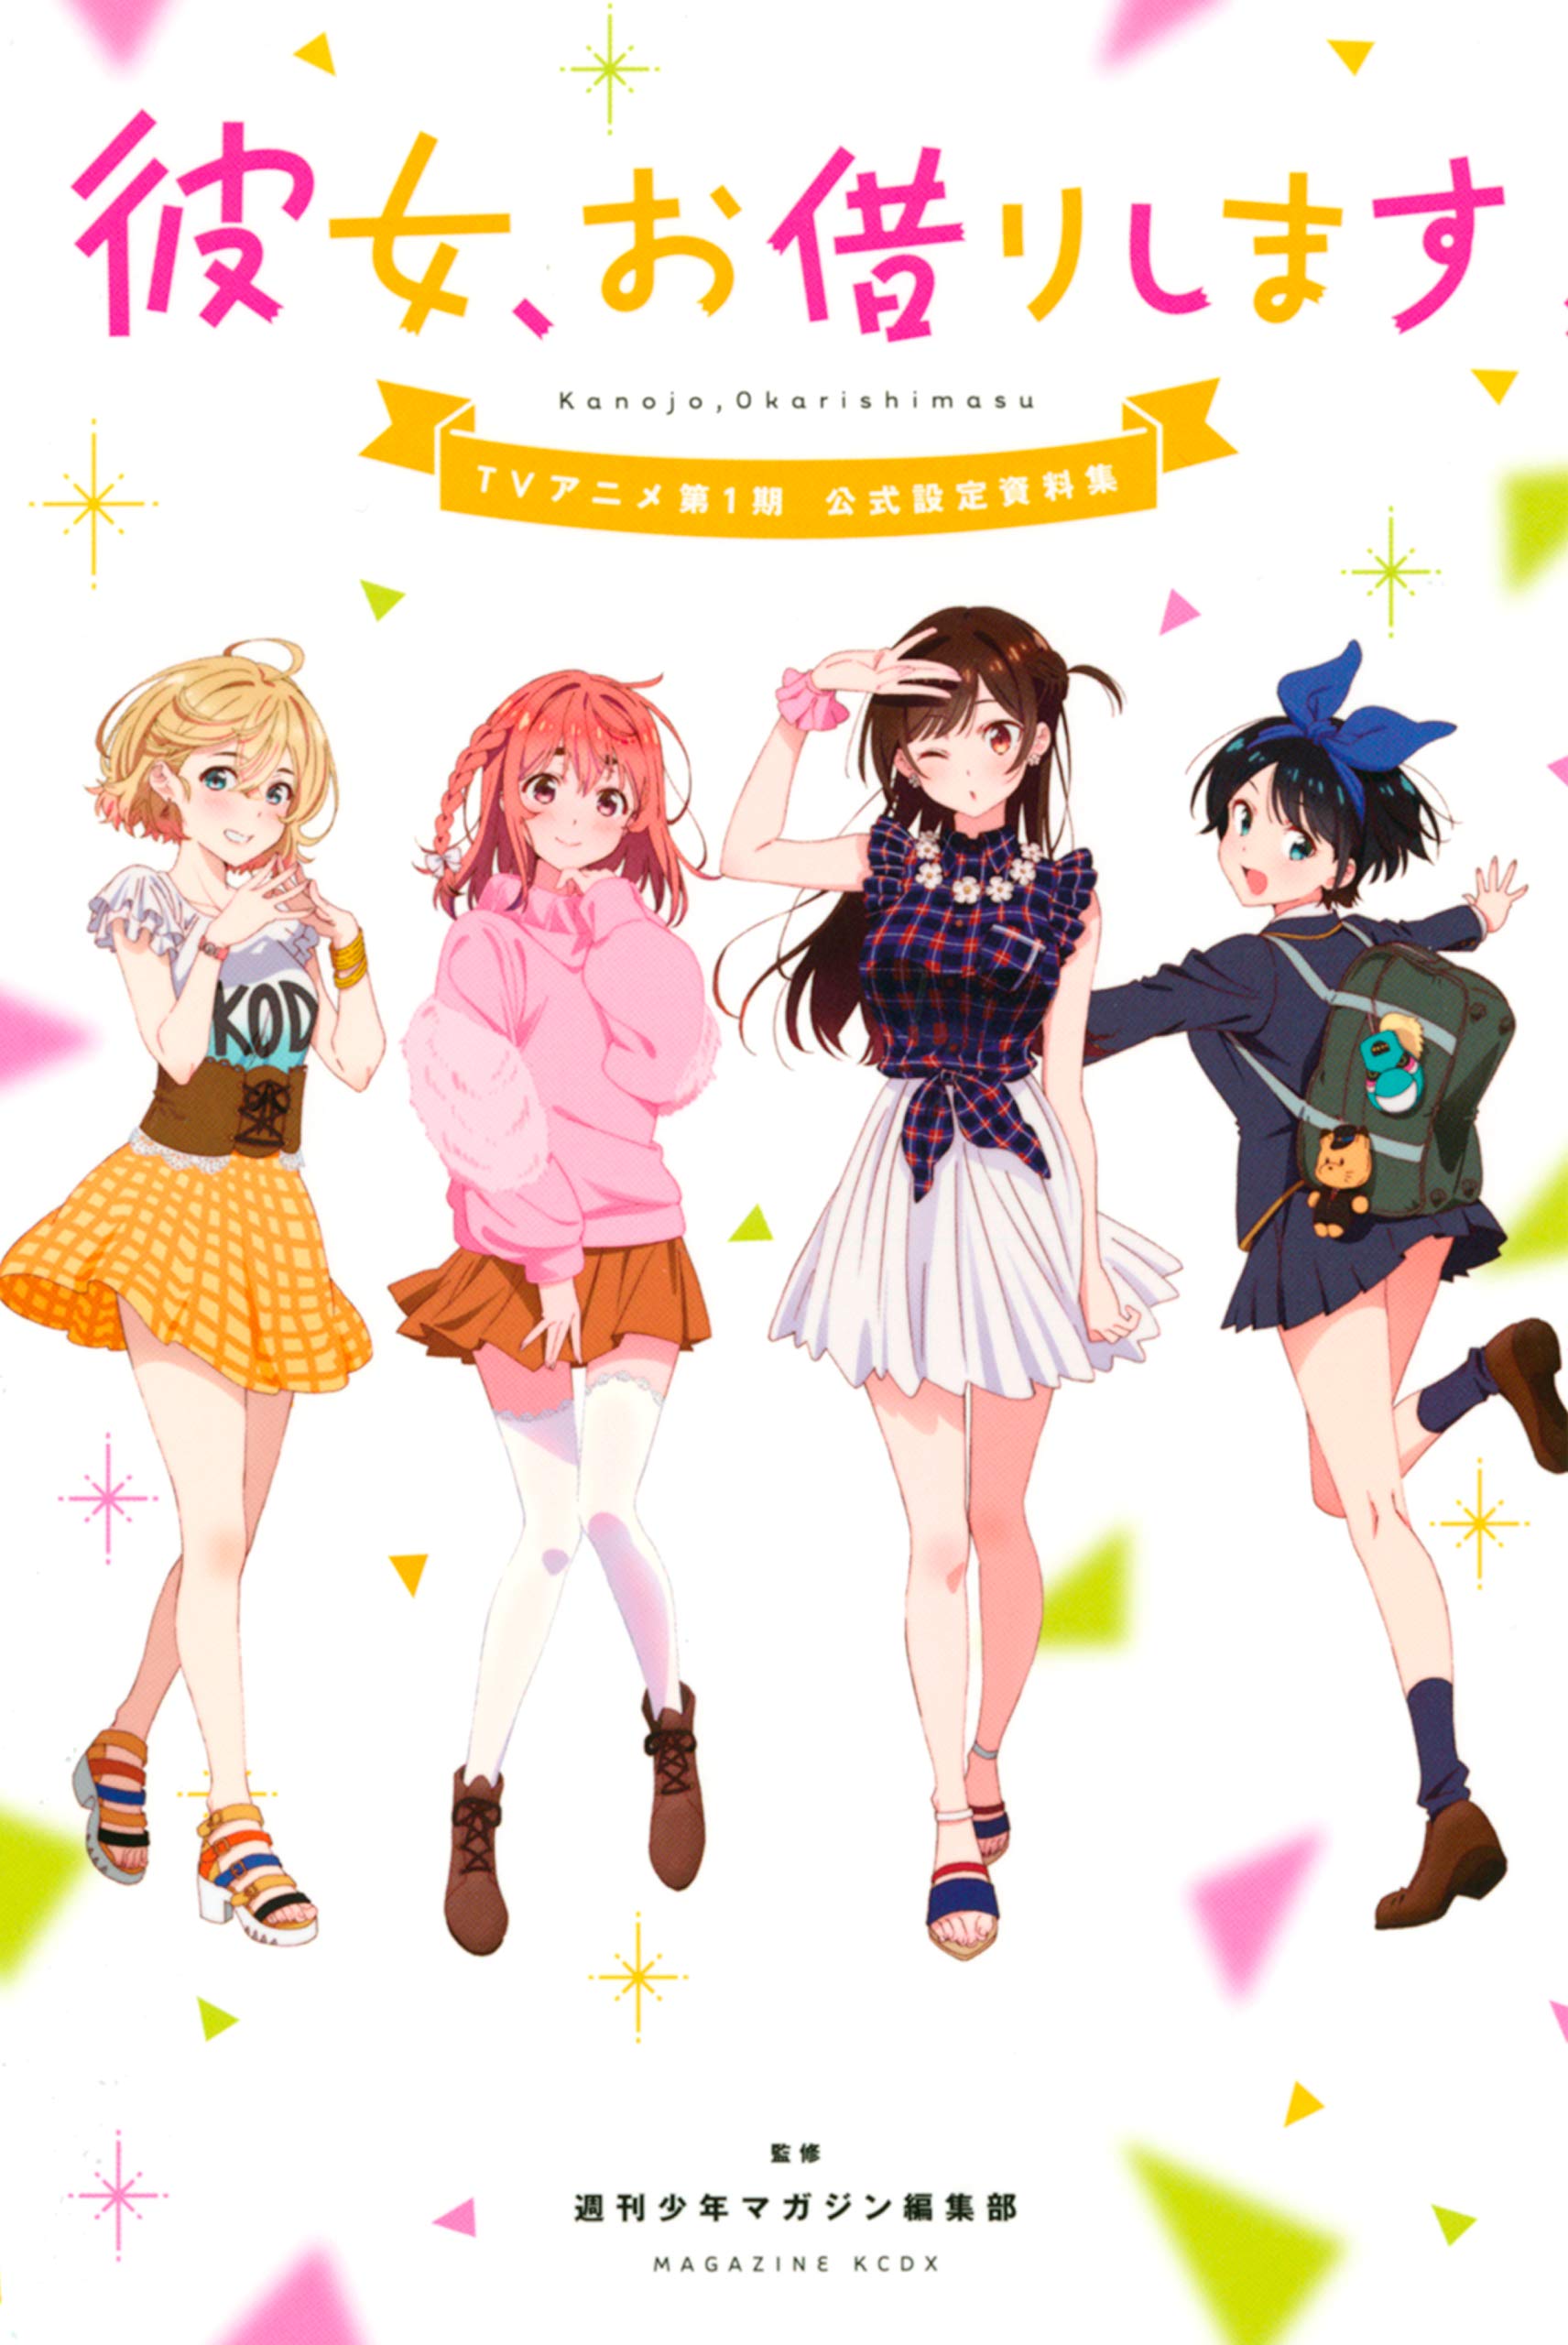 Kanojo Okarishimasu Rent A Girlfriend Anime Anime Girls Mami Nanami Ruka Sarashina Sumi Sakurasawa C 1712x2560